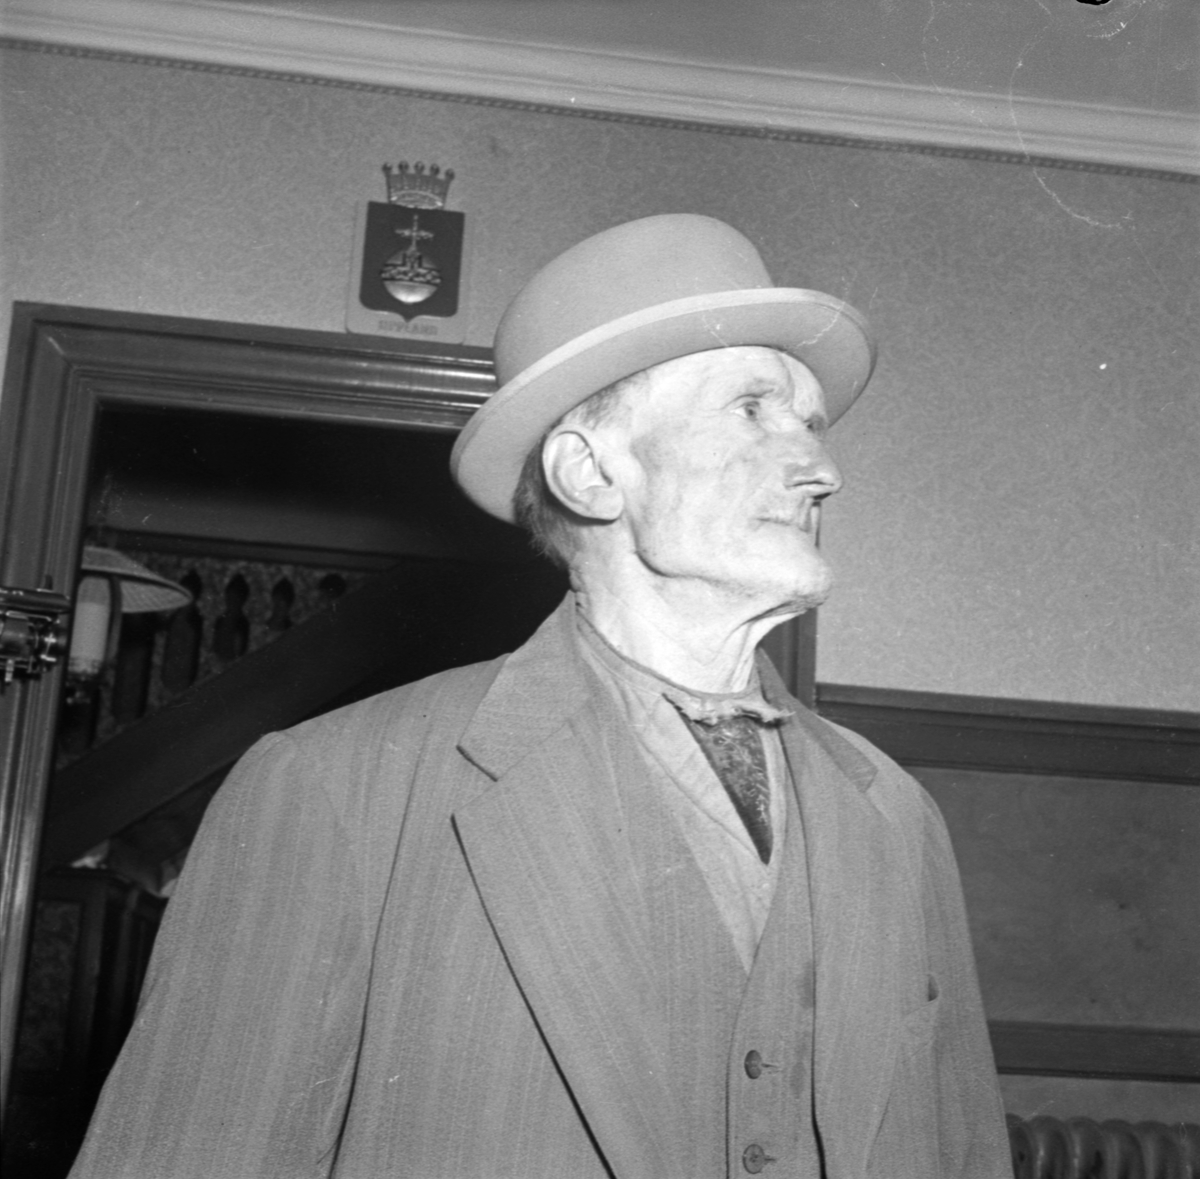 Polis, rån och överfall, spelmannen Matts Berlin, Bälinge, Uppland maj 1949